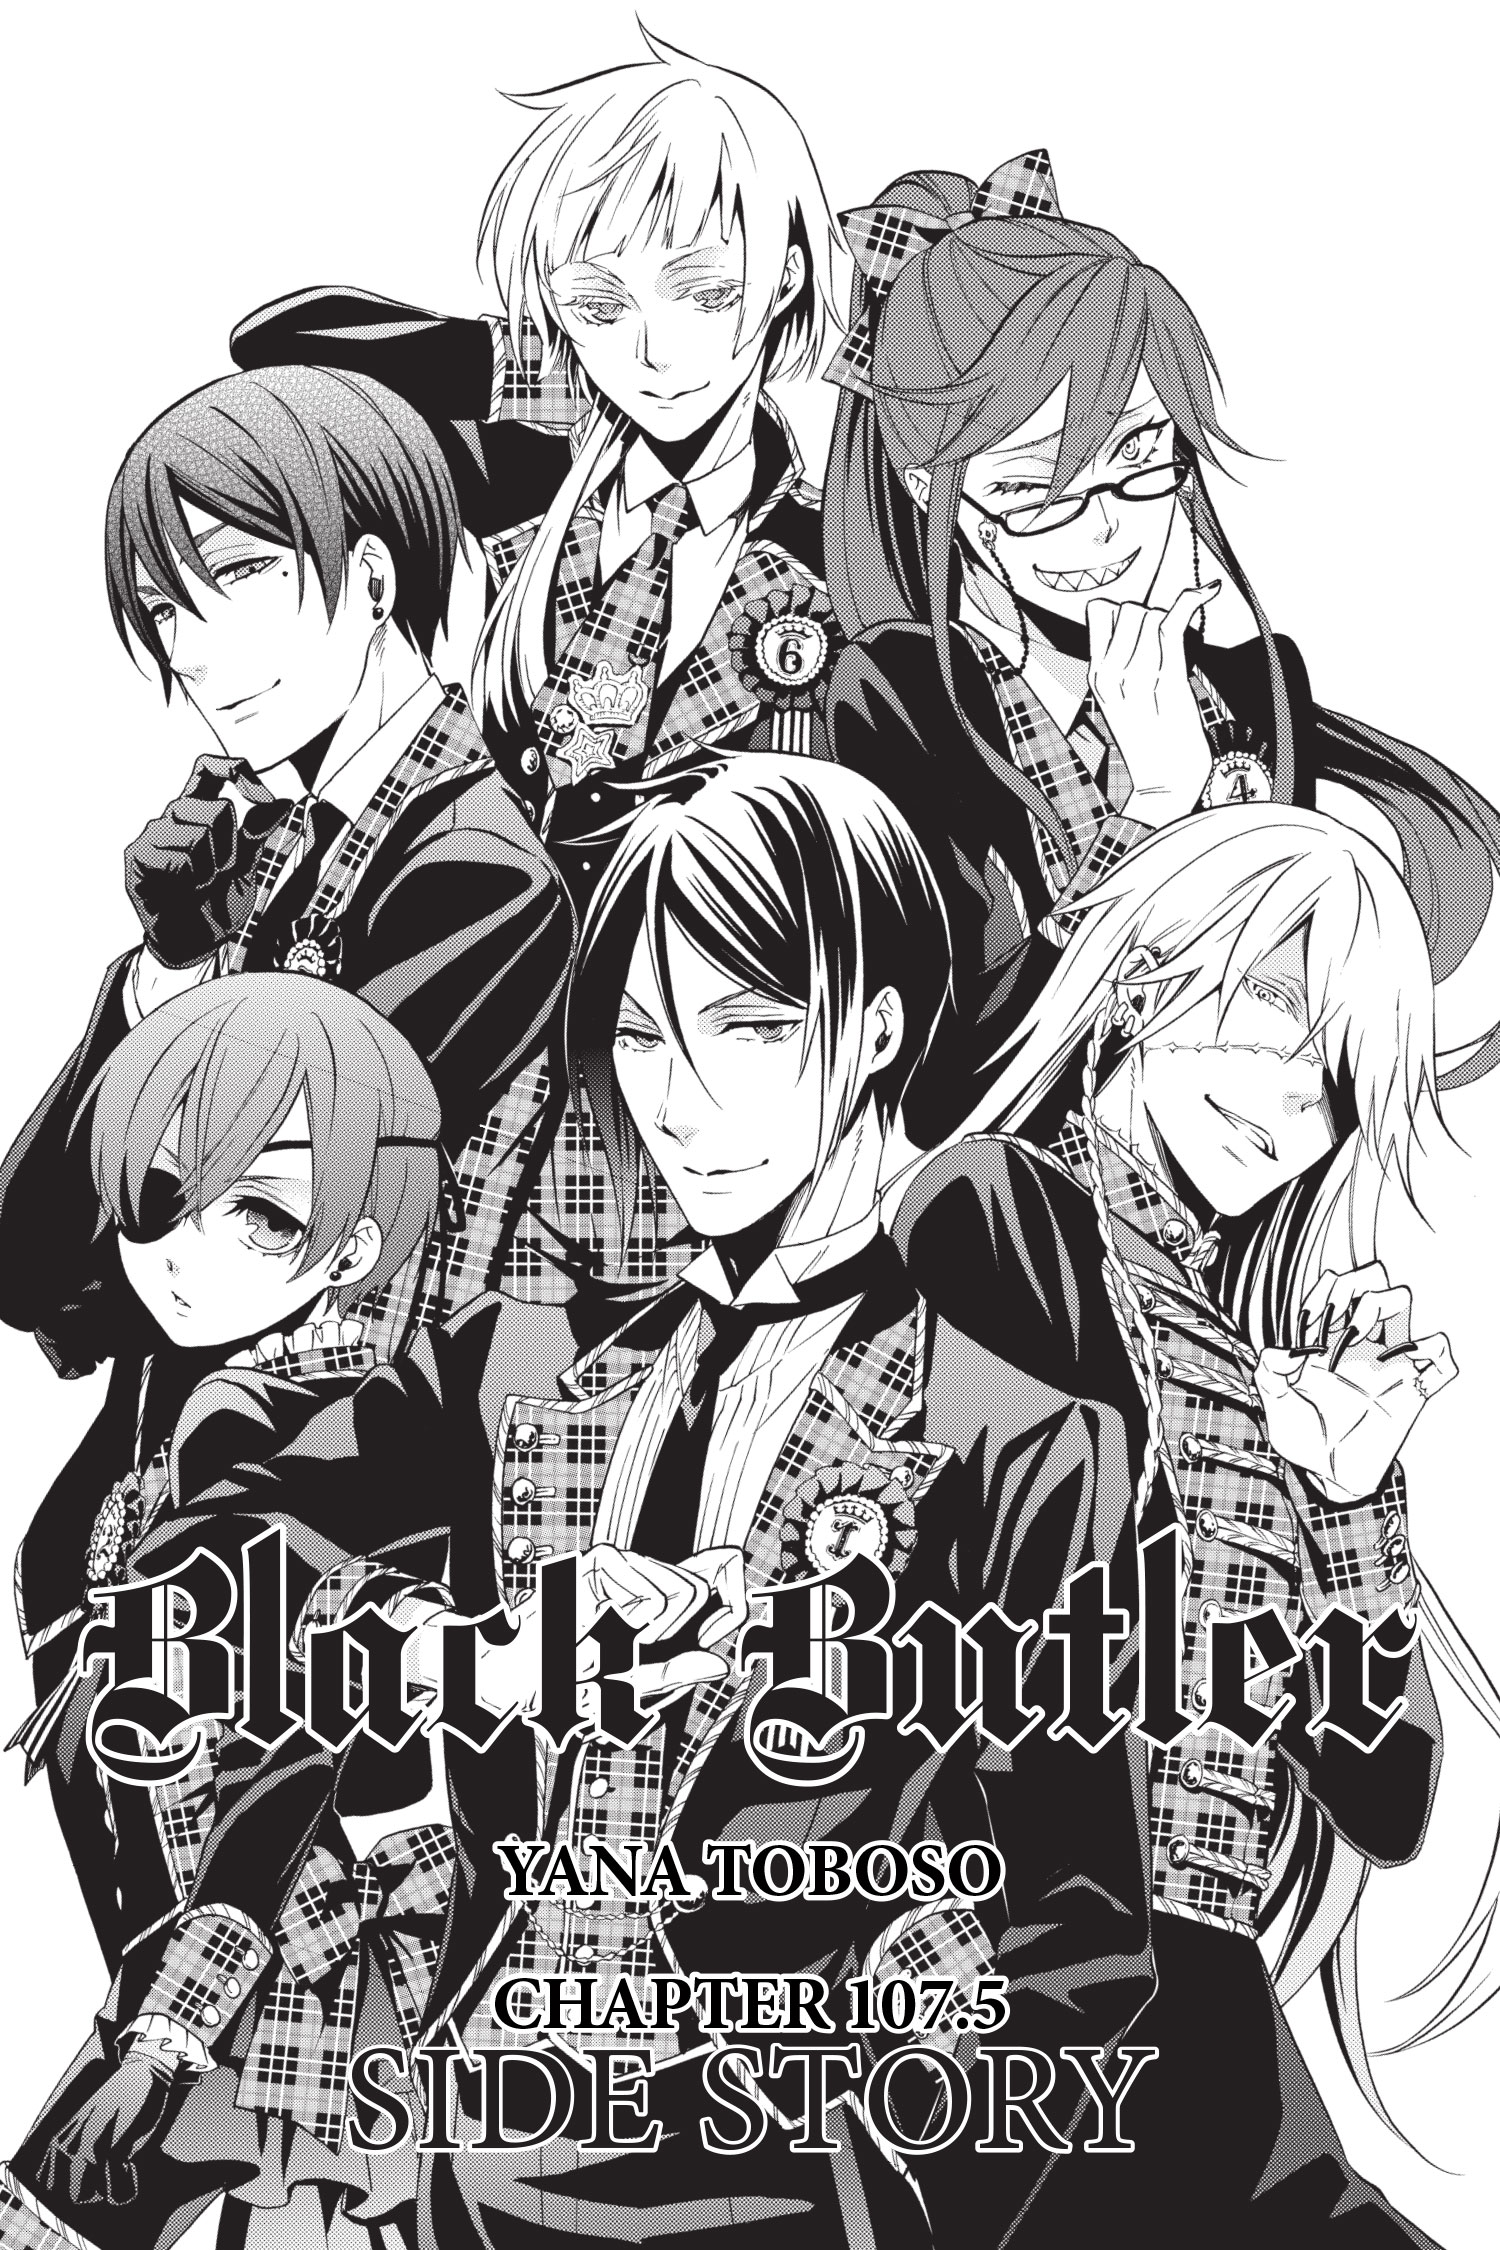 Black Butler (manga) - Anime News Network